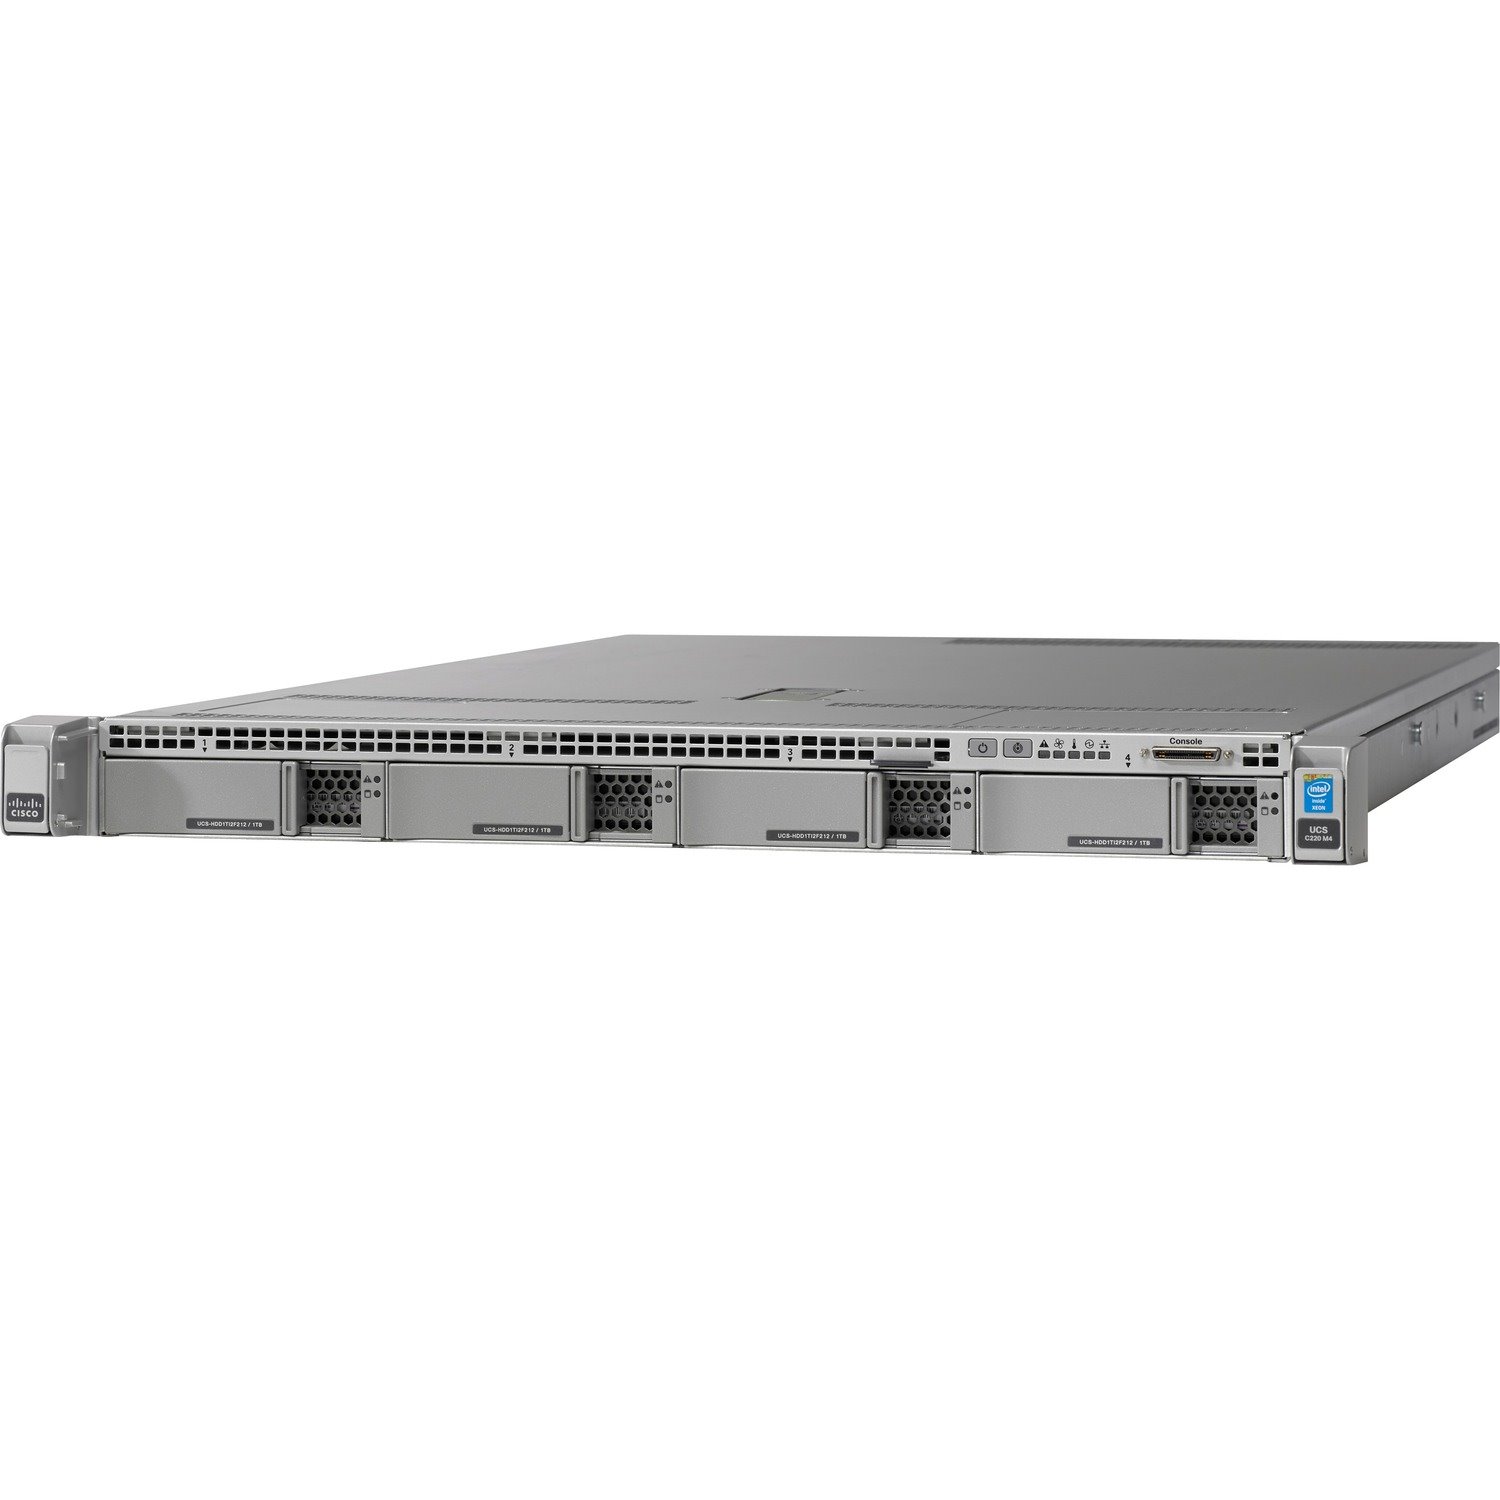 Cisco C220 M4 1U Rack Server - 2 x Intel Xeon E5-2630 v3 2.40 GHz - 64 GB RAM - Serial ATA/600 Controller